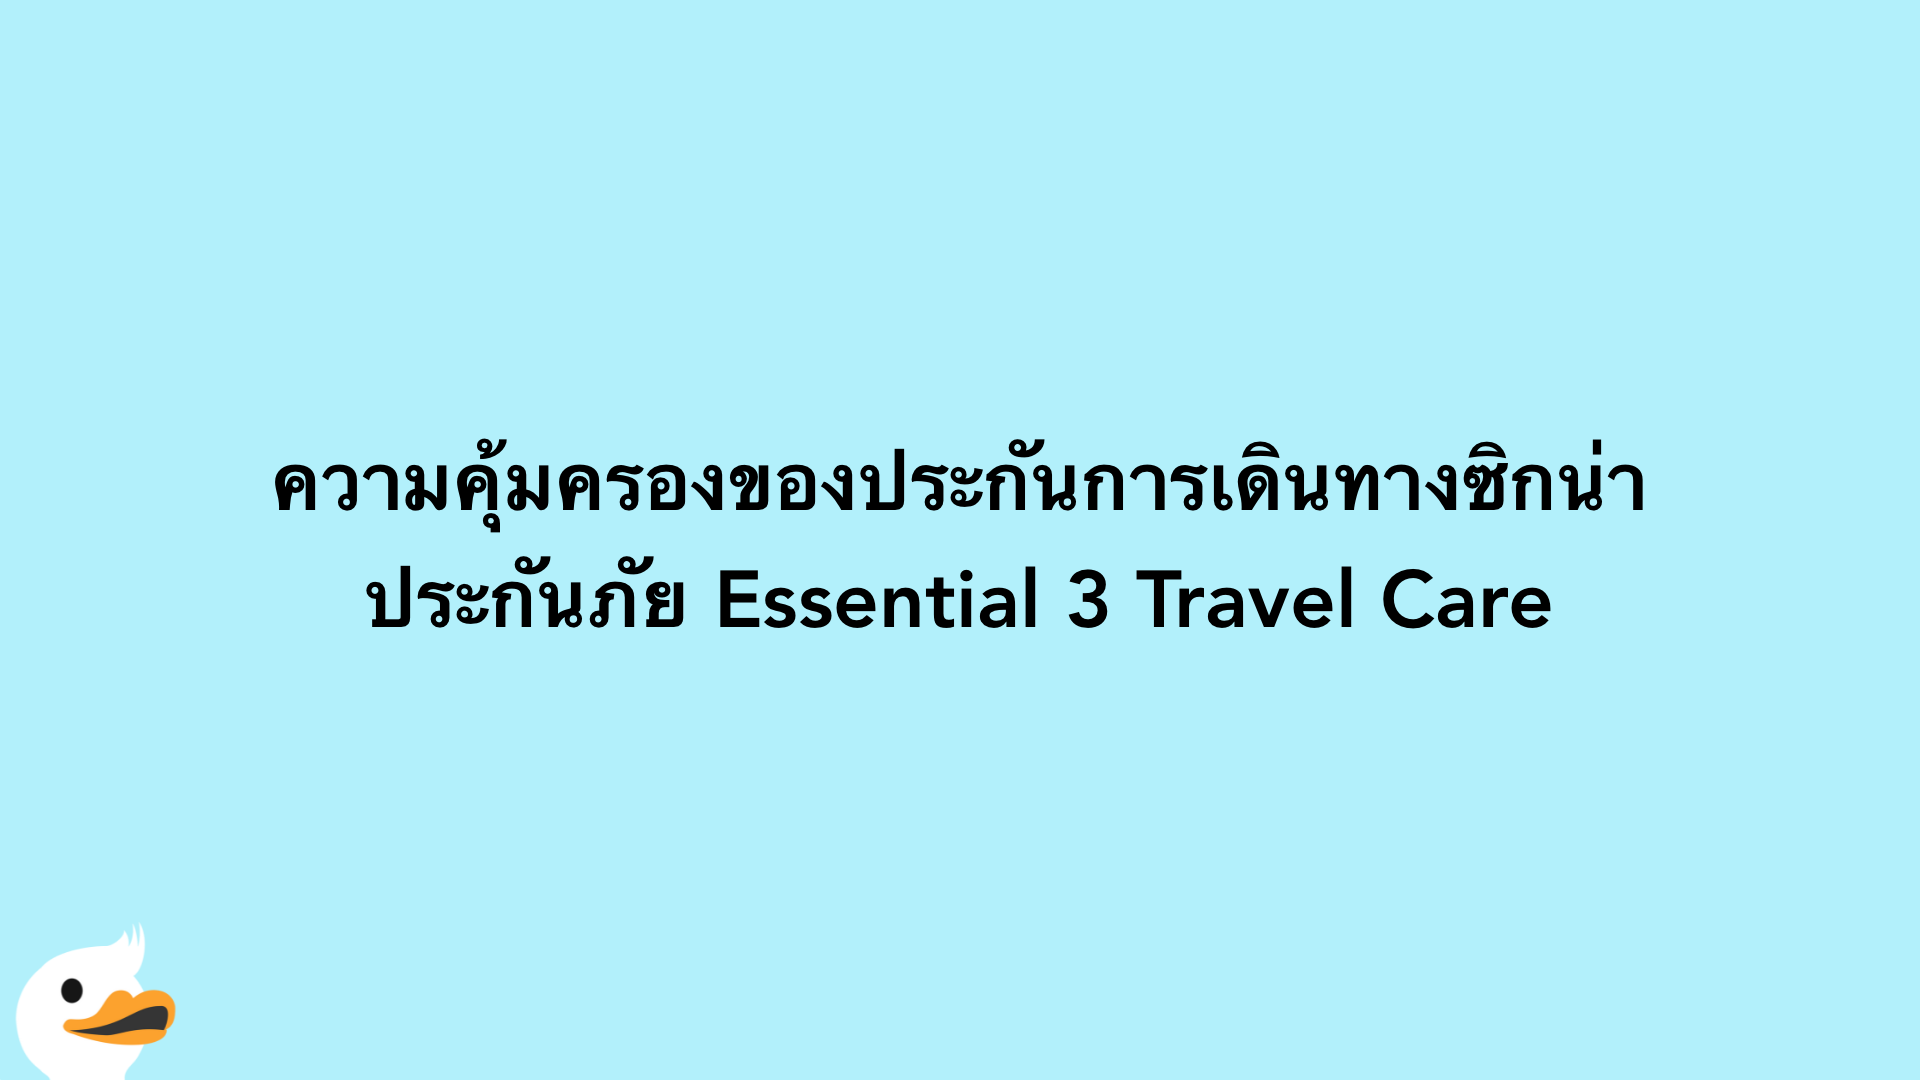 ความคุ้มครองของประกันการเดินทางซิกน่า ประกันภัย Essential 3 Travel Care